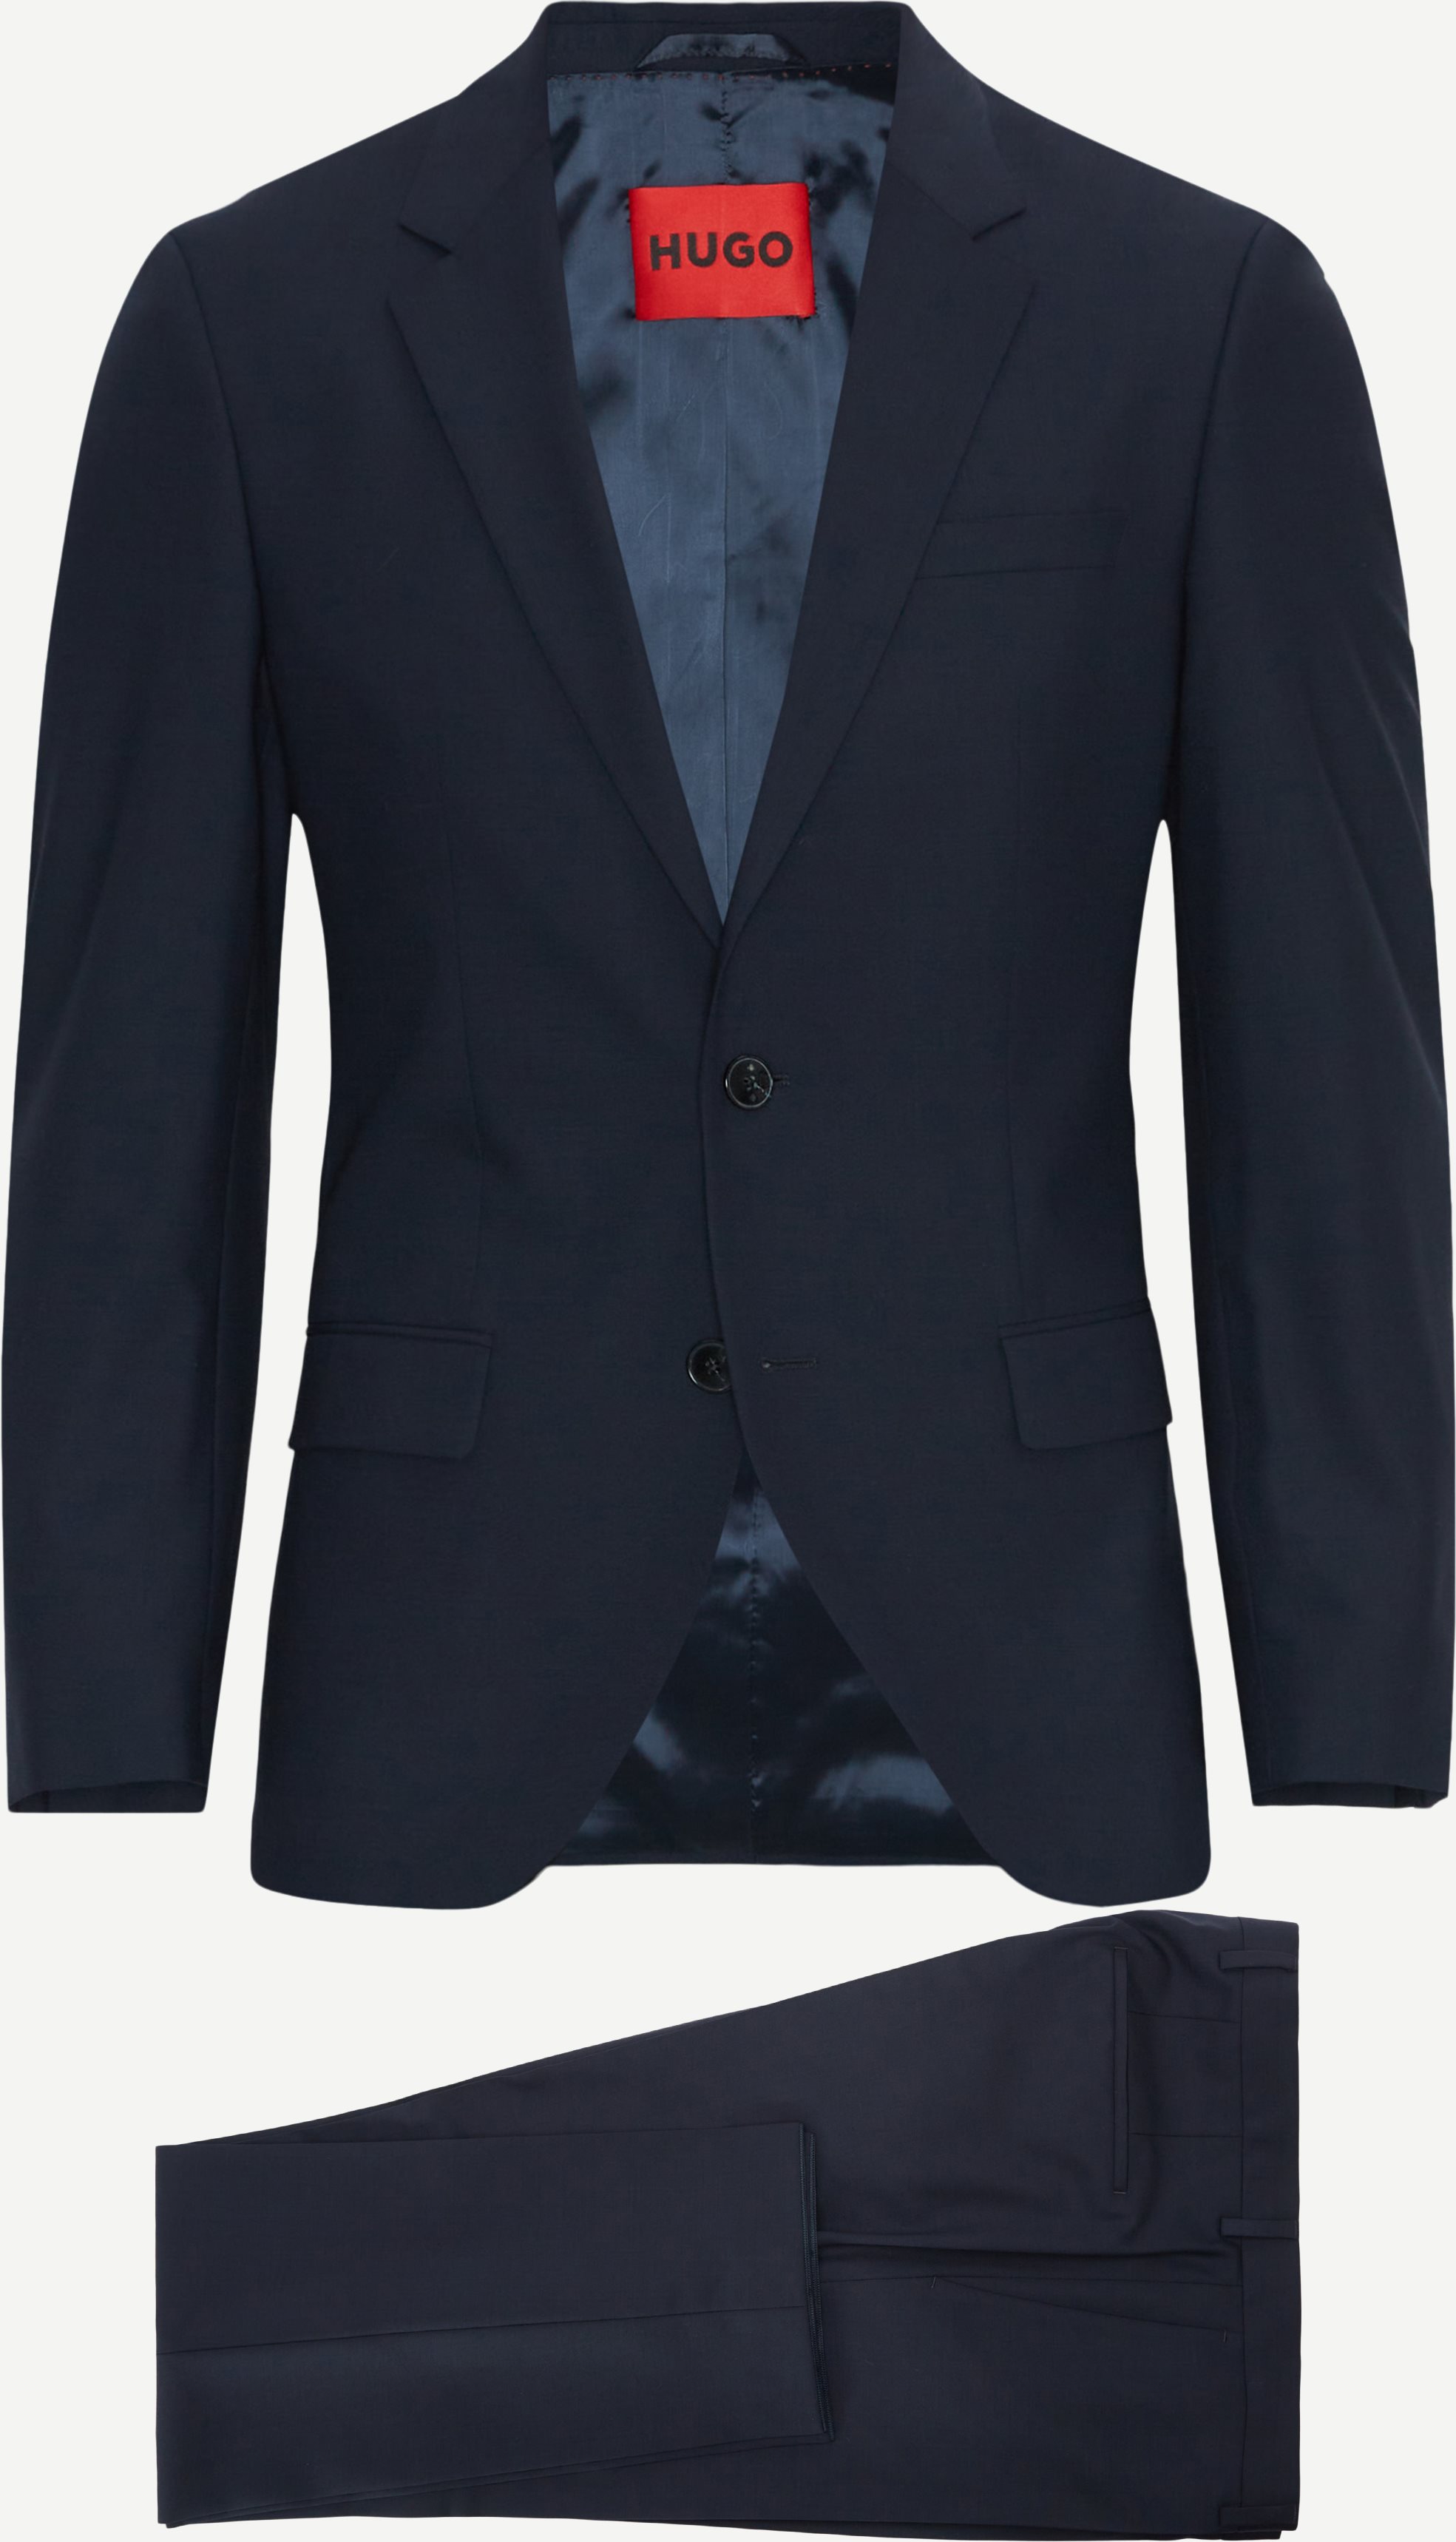 HUGO Suits 0239 HENRY/GETLIN Blue